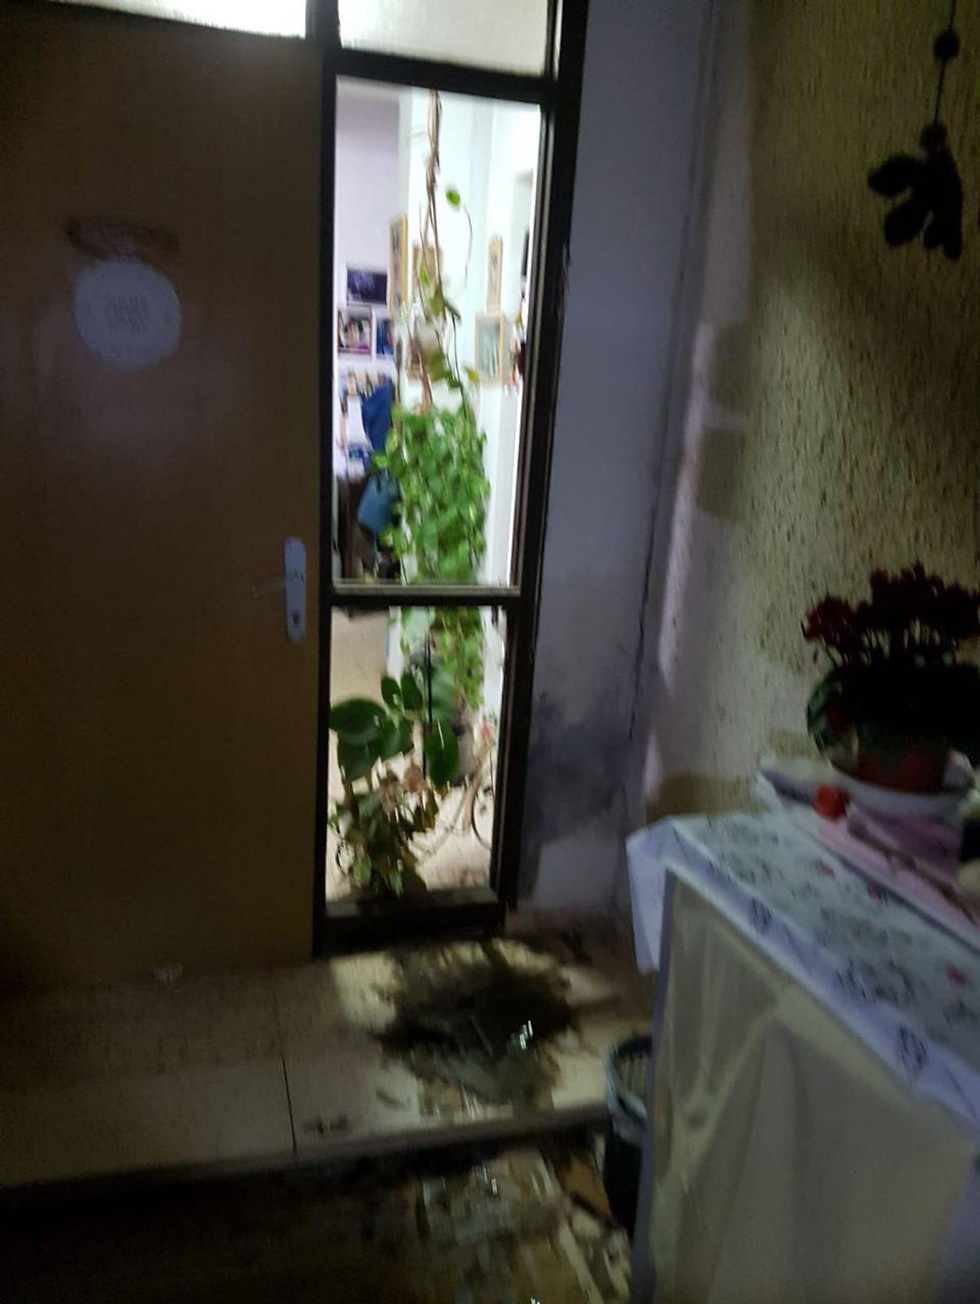 House damaged in Eshkol Regional Council